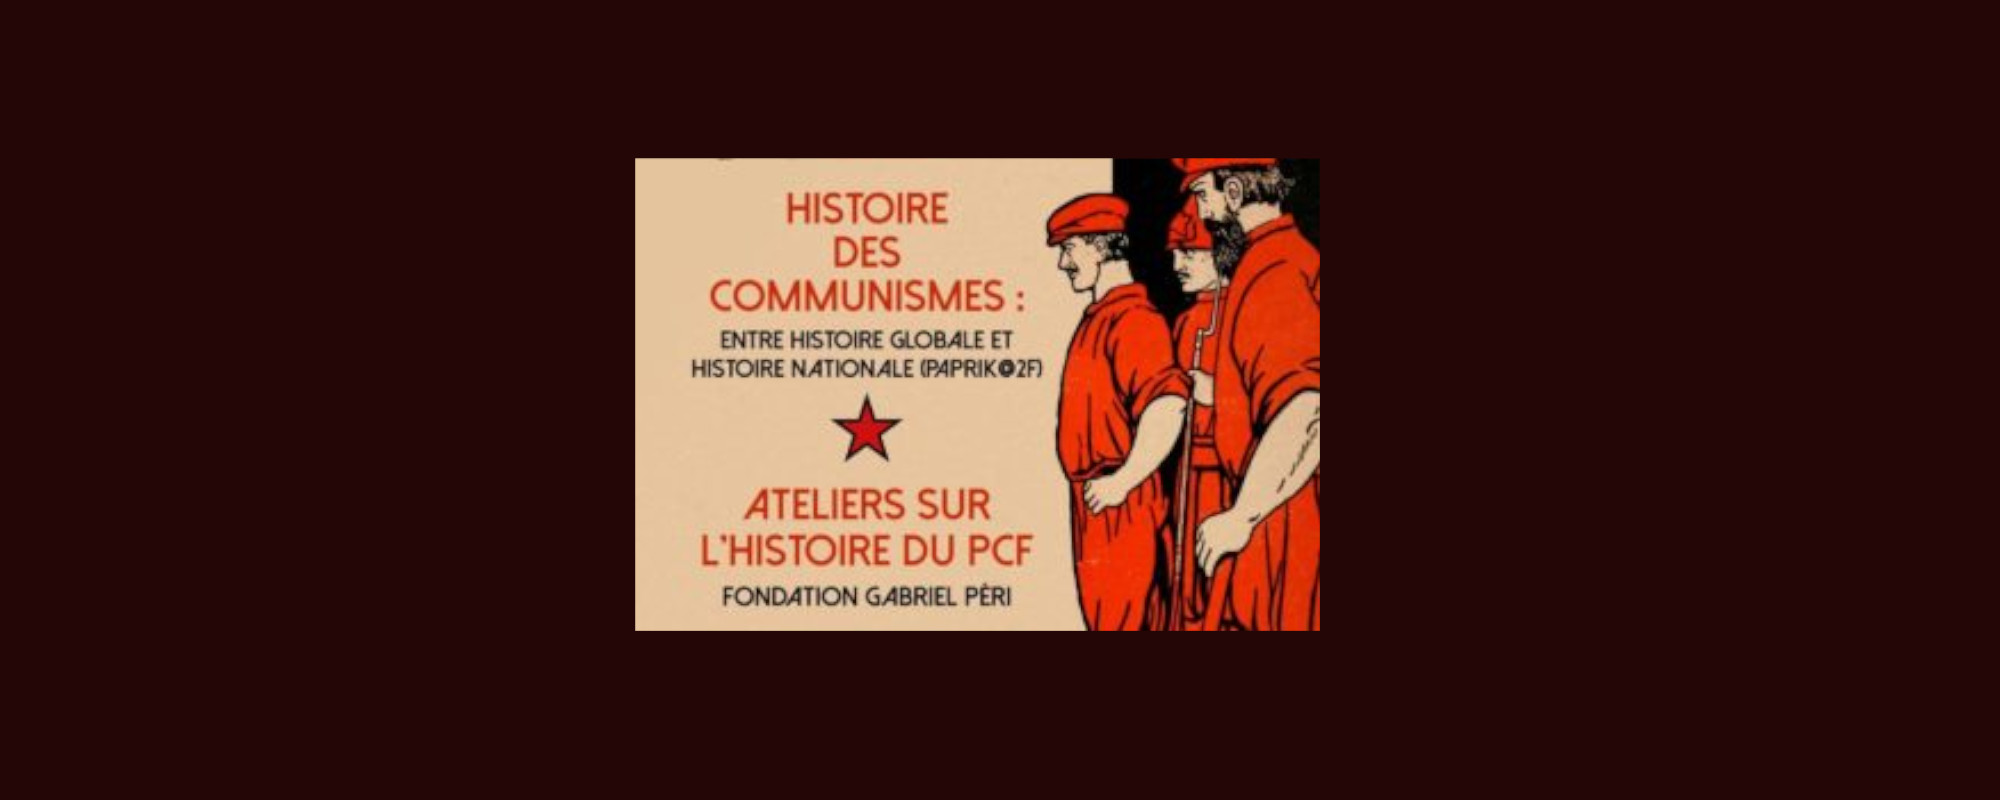 Les recherches autour de l’Eurocommunisme